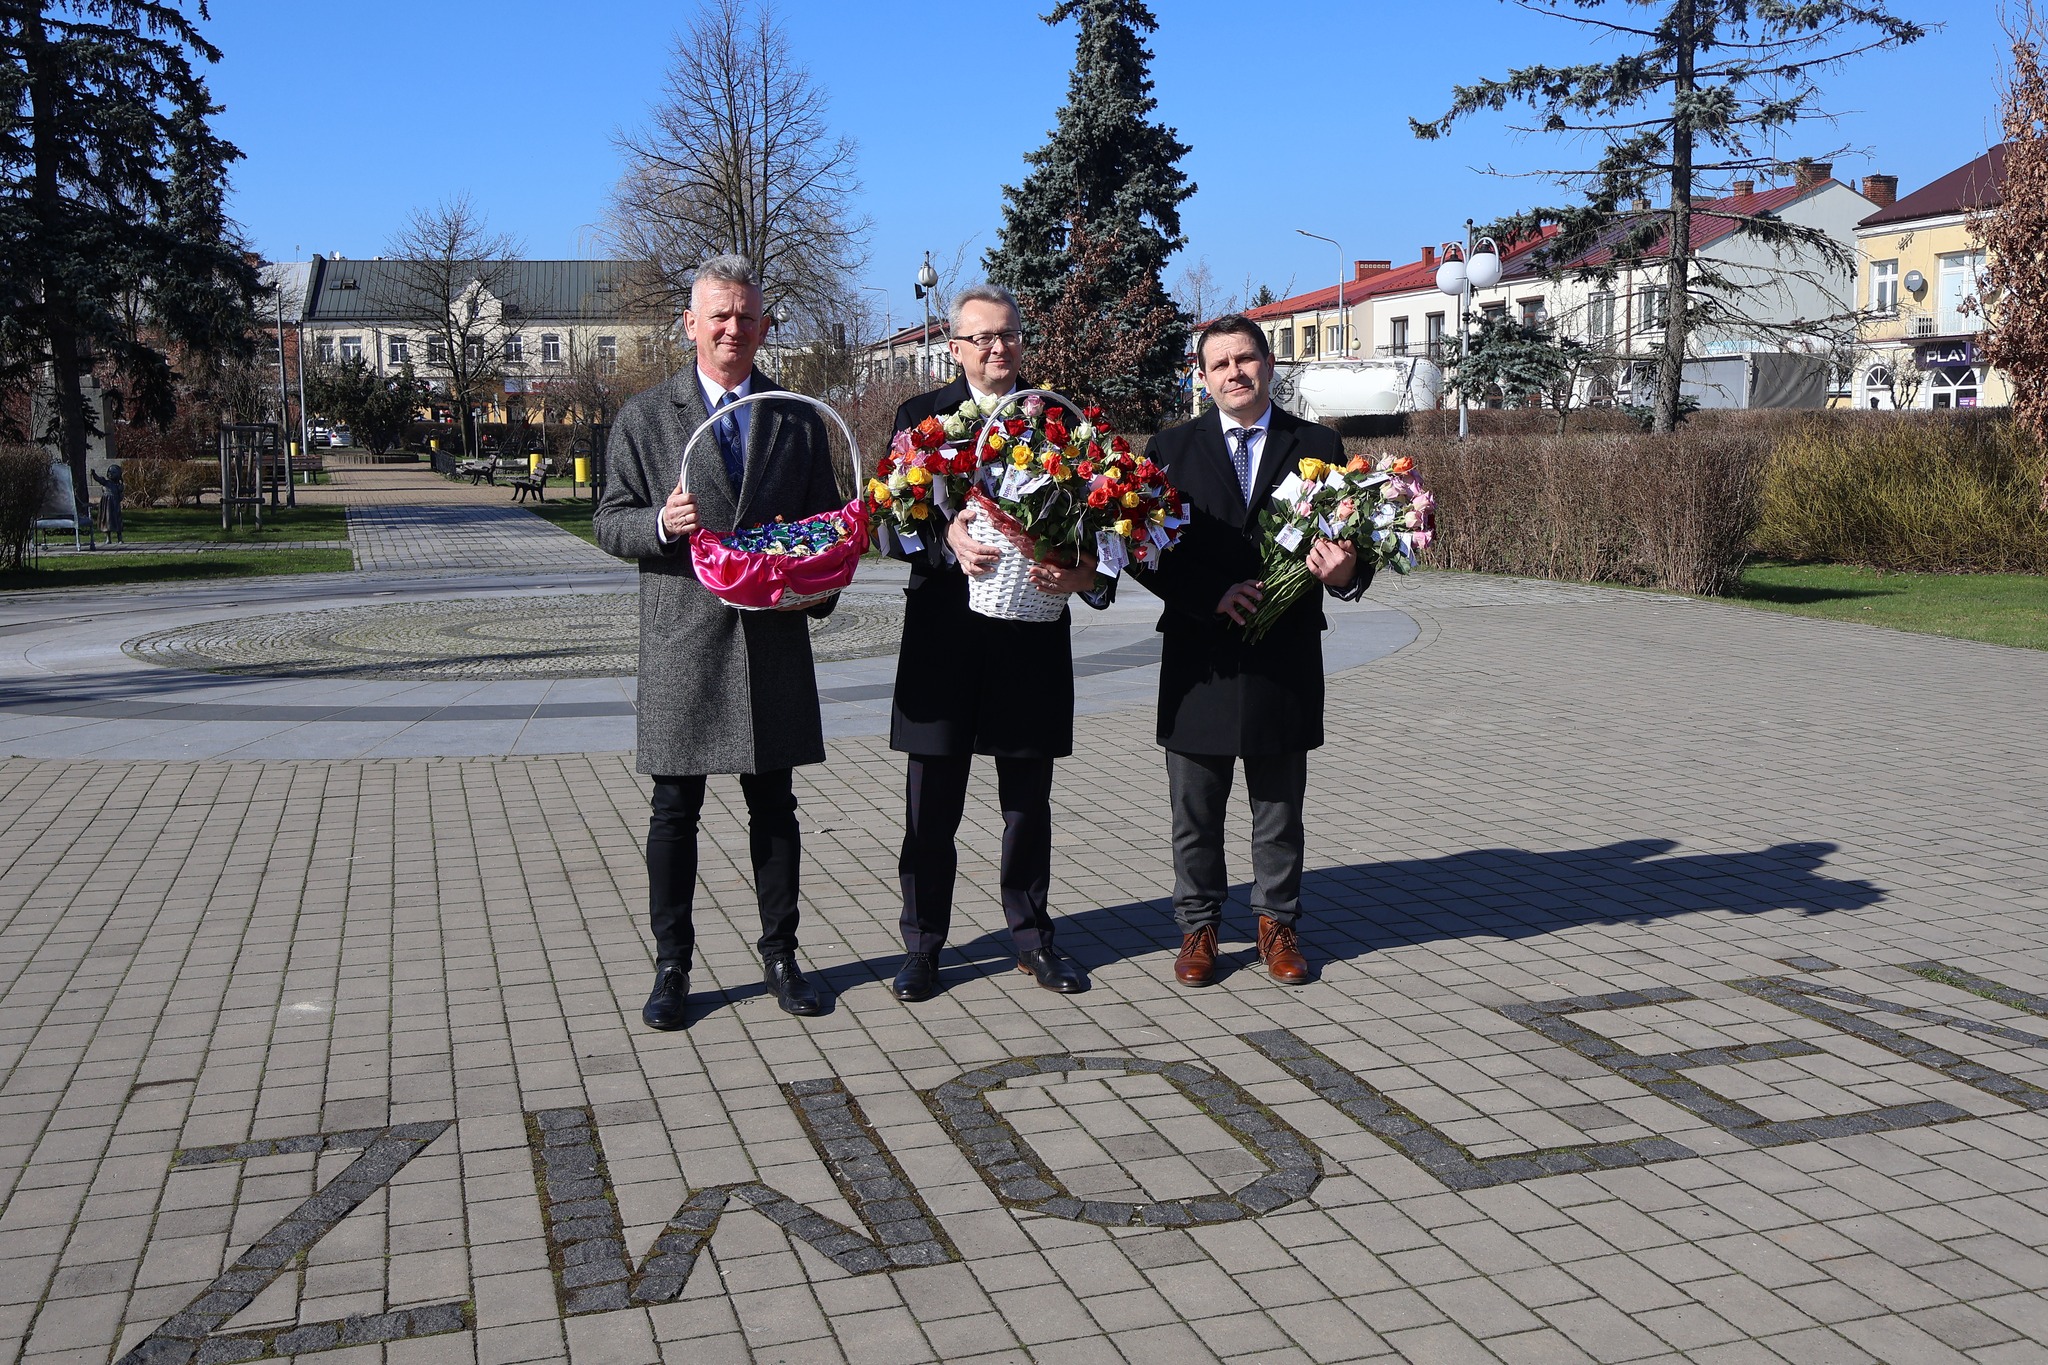 Kwiaty paniom wręczali: burmistrz Zwolenia Arkadiusz Sulima, z-ca burmistrza Grzegorz Molendowski i sekretarz gminy Mirosław Chołuj.